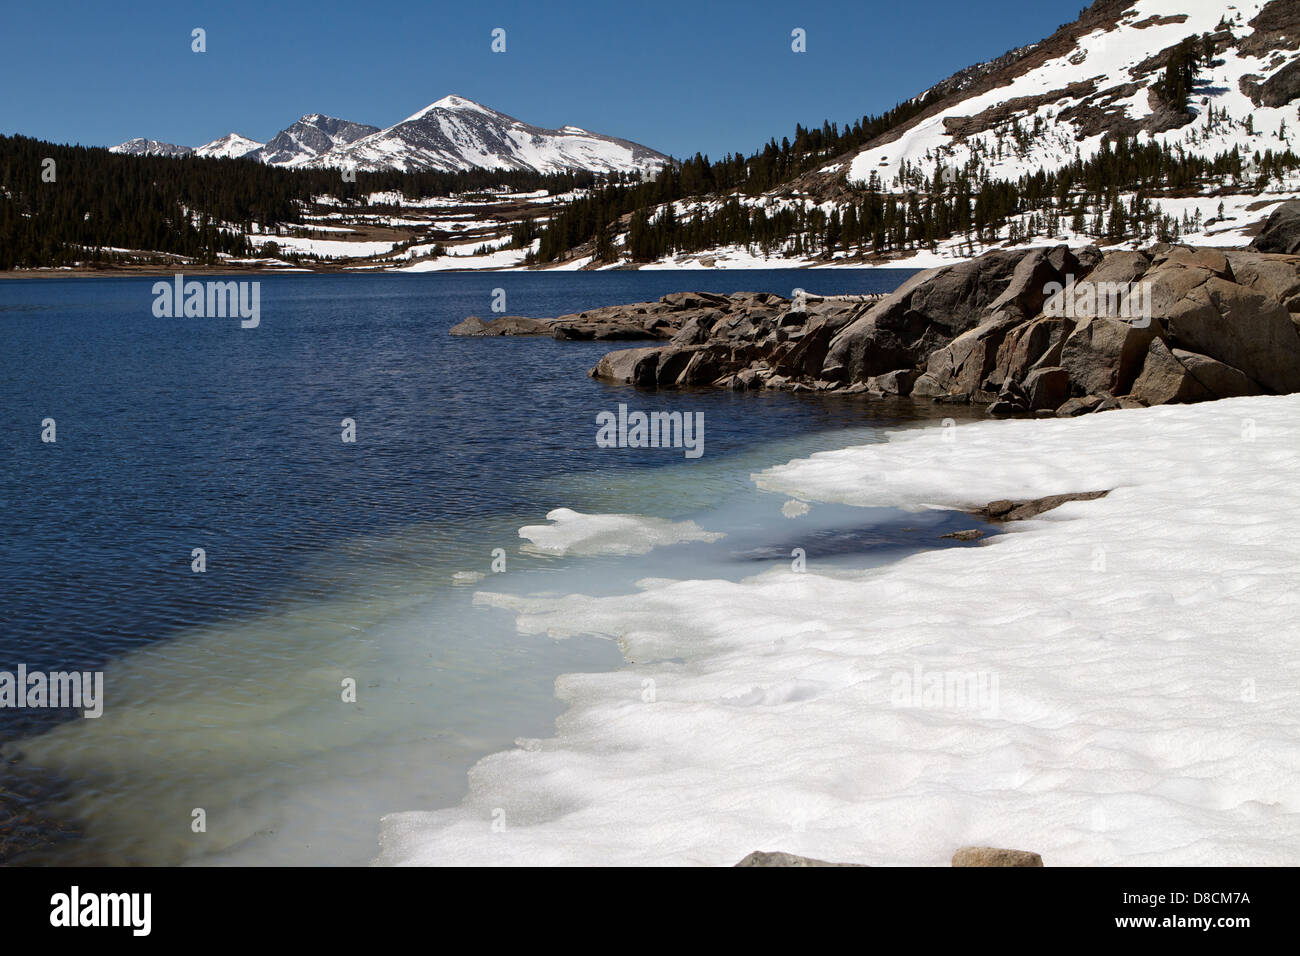 El hielo blando en Tioga lago en la parte oriental de Sierra Nevada durante el deshielo de primavera Foto de stock